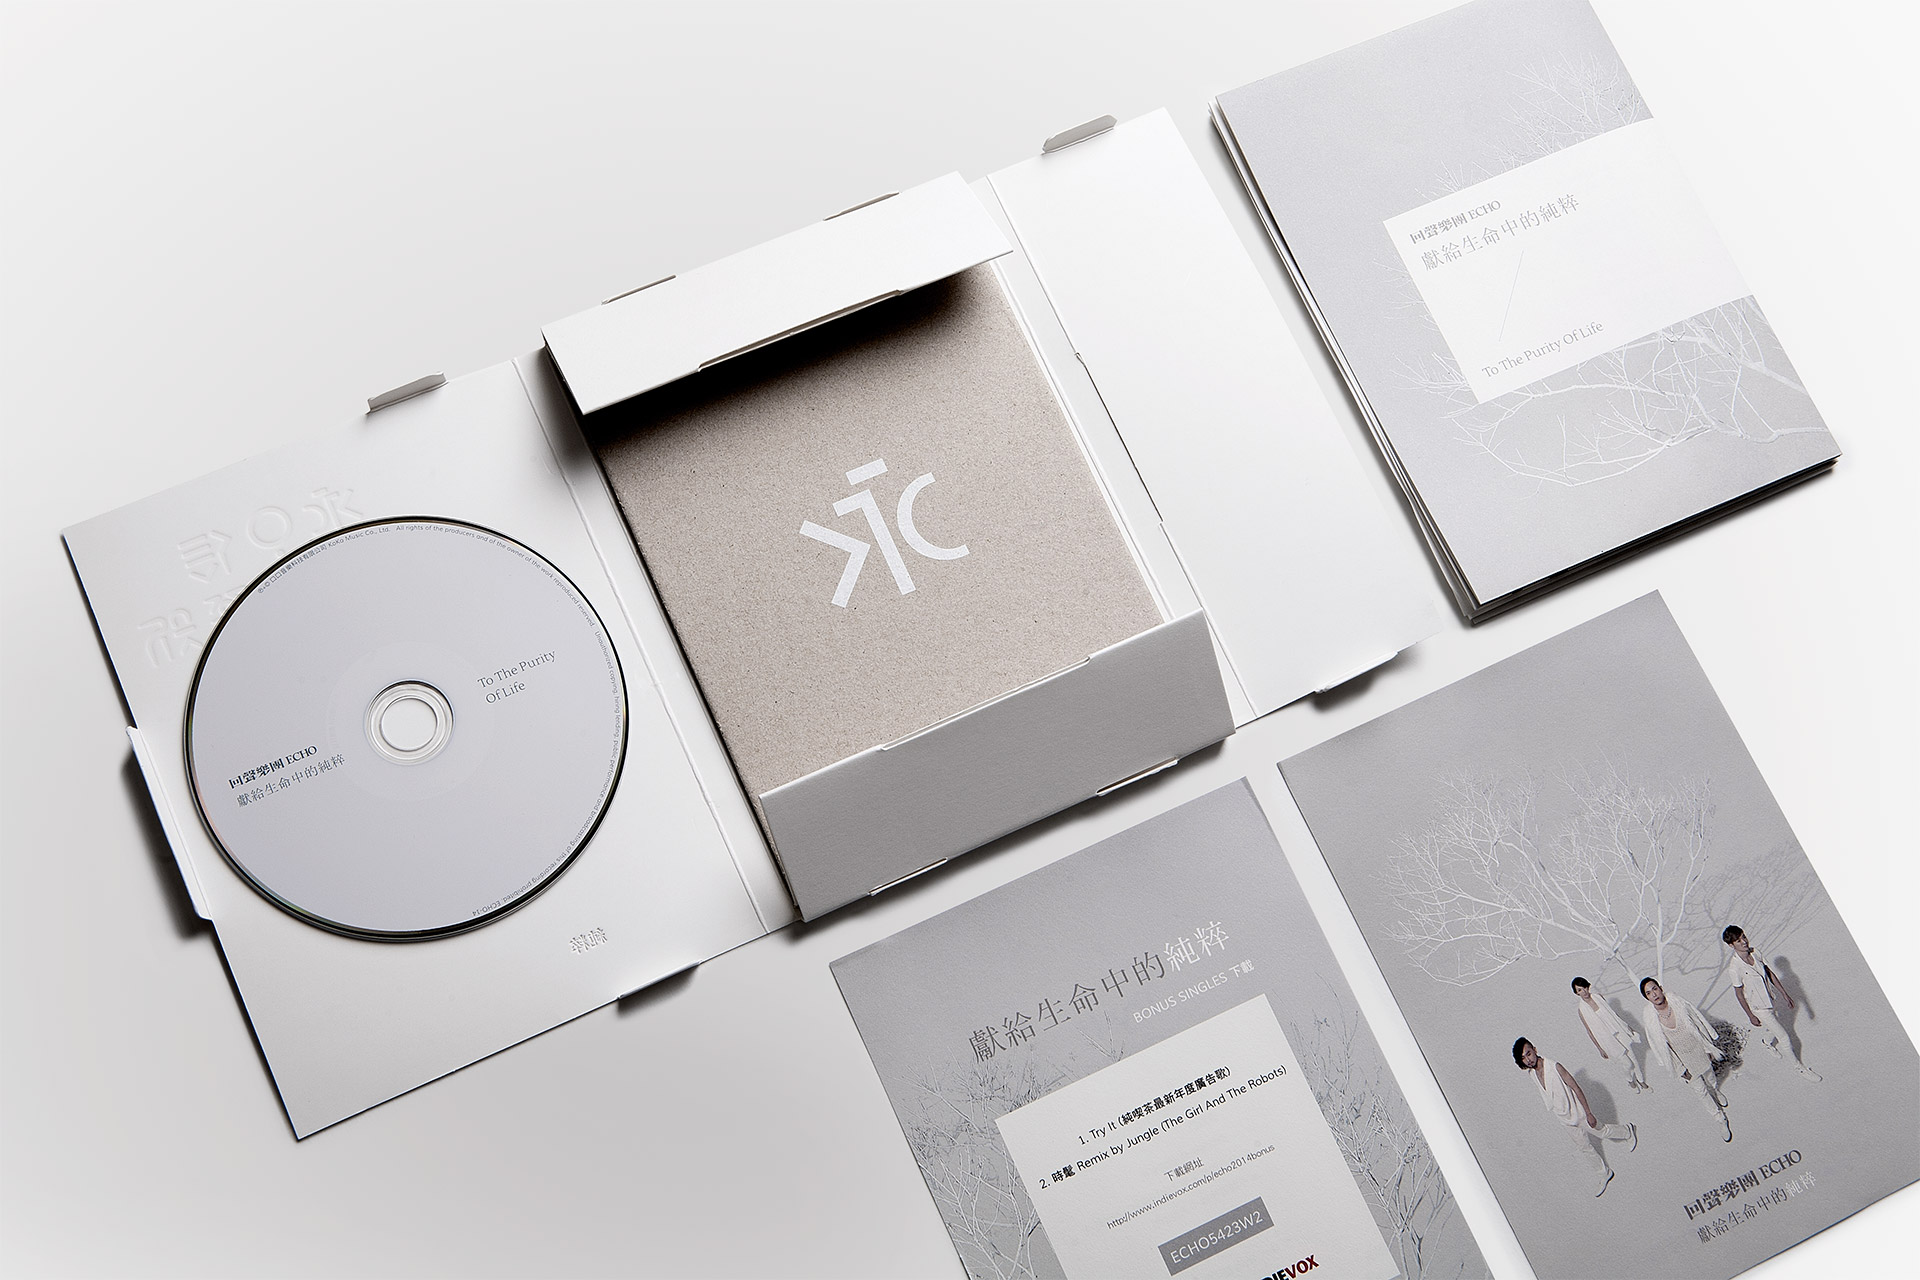 回聲的專輯對LEon來說不僅是CD設計更是包含整體概念的產品設計。